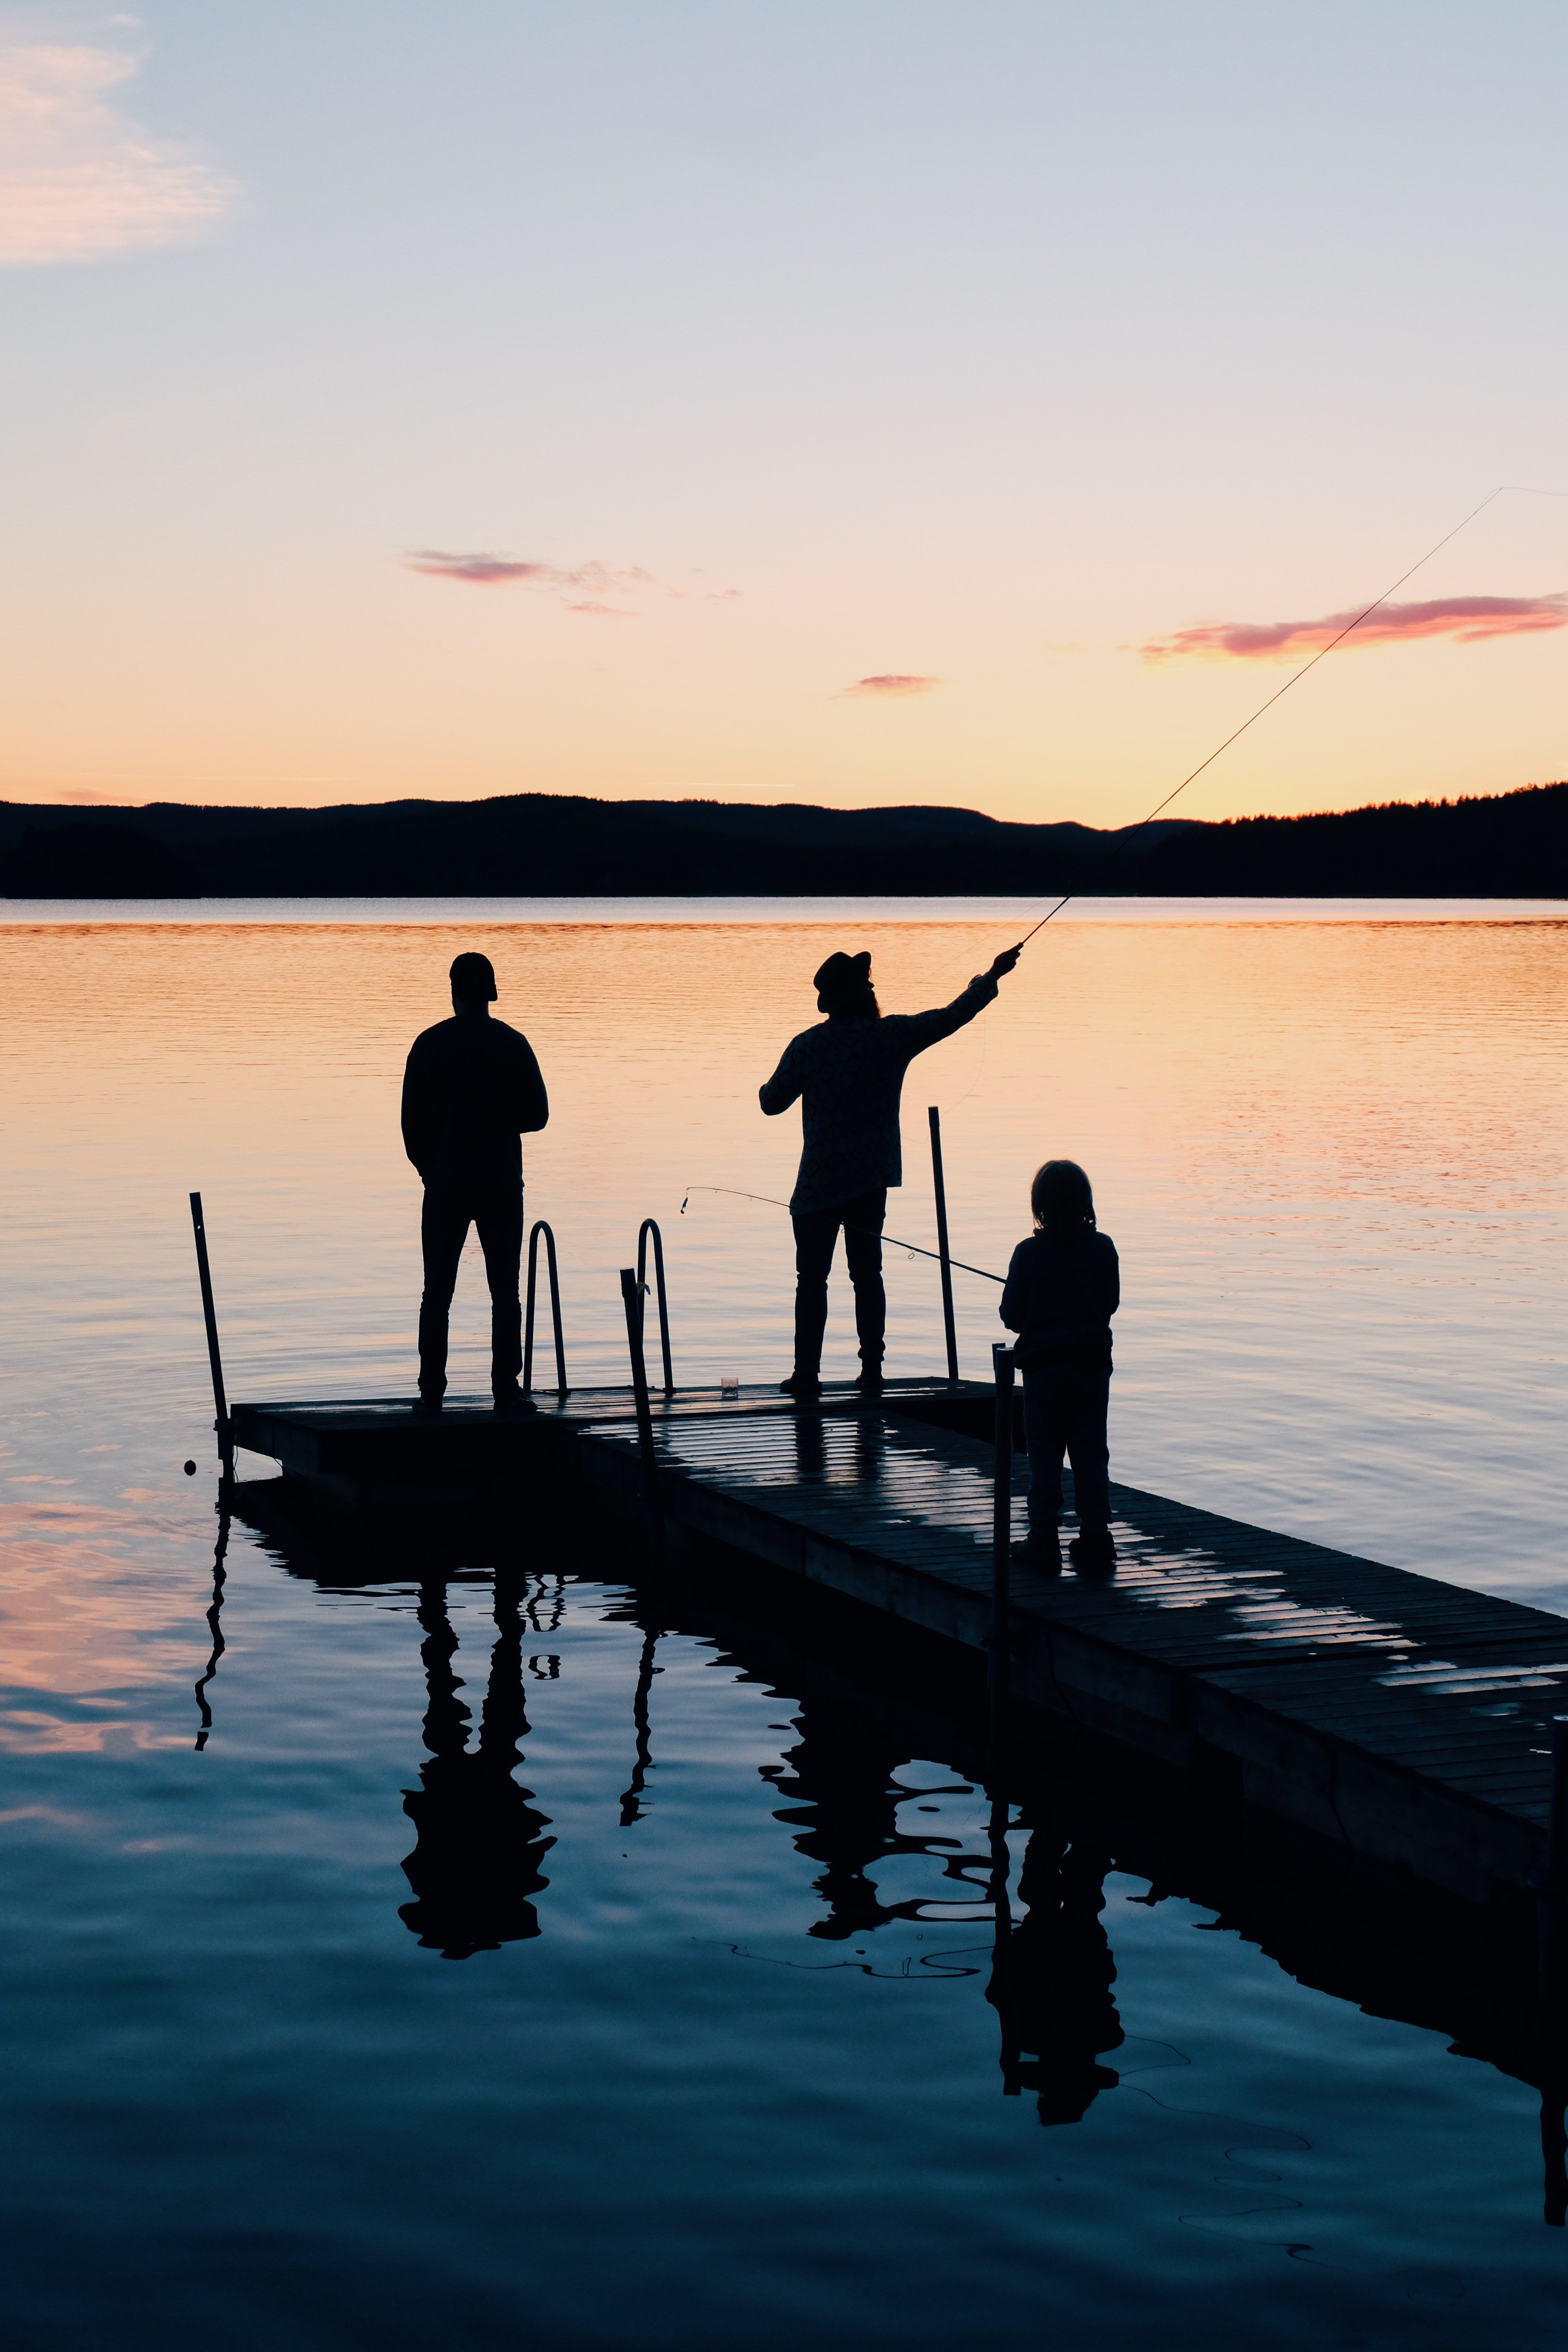 Patricks Familie verbrachte während ihres Kurztrips am See Zeit mit Peter und seiner Familie. | Quelle: Pexels